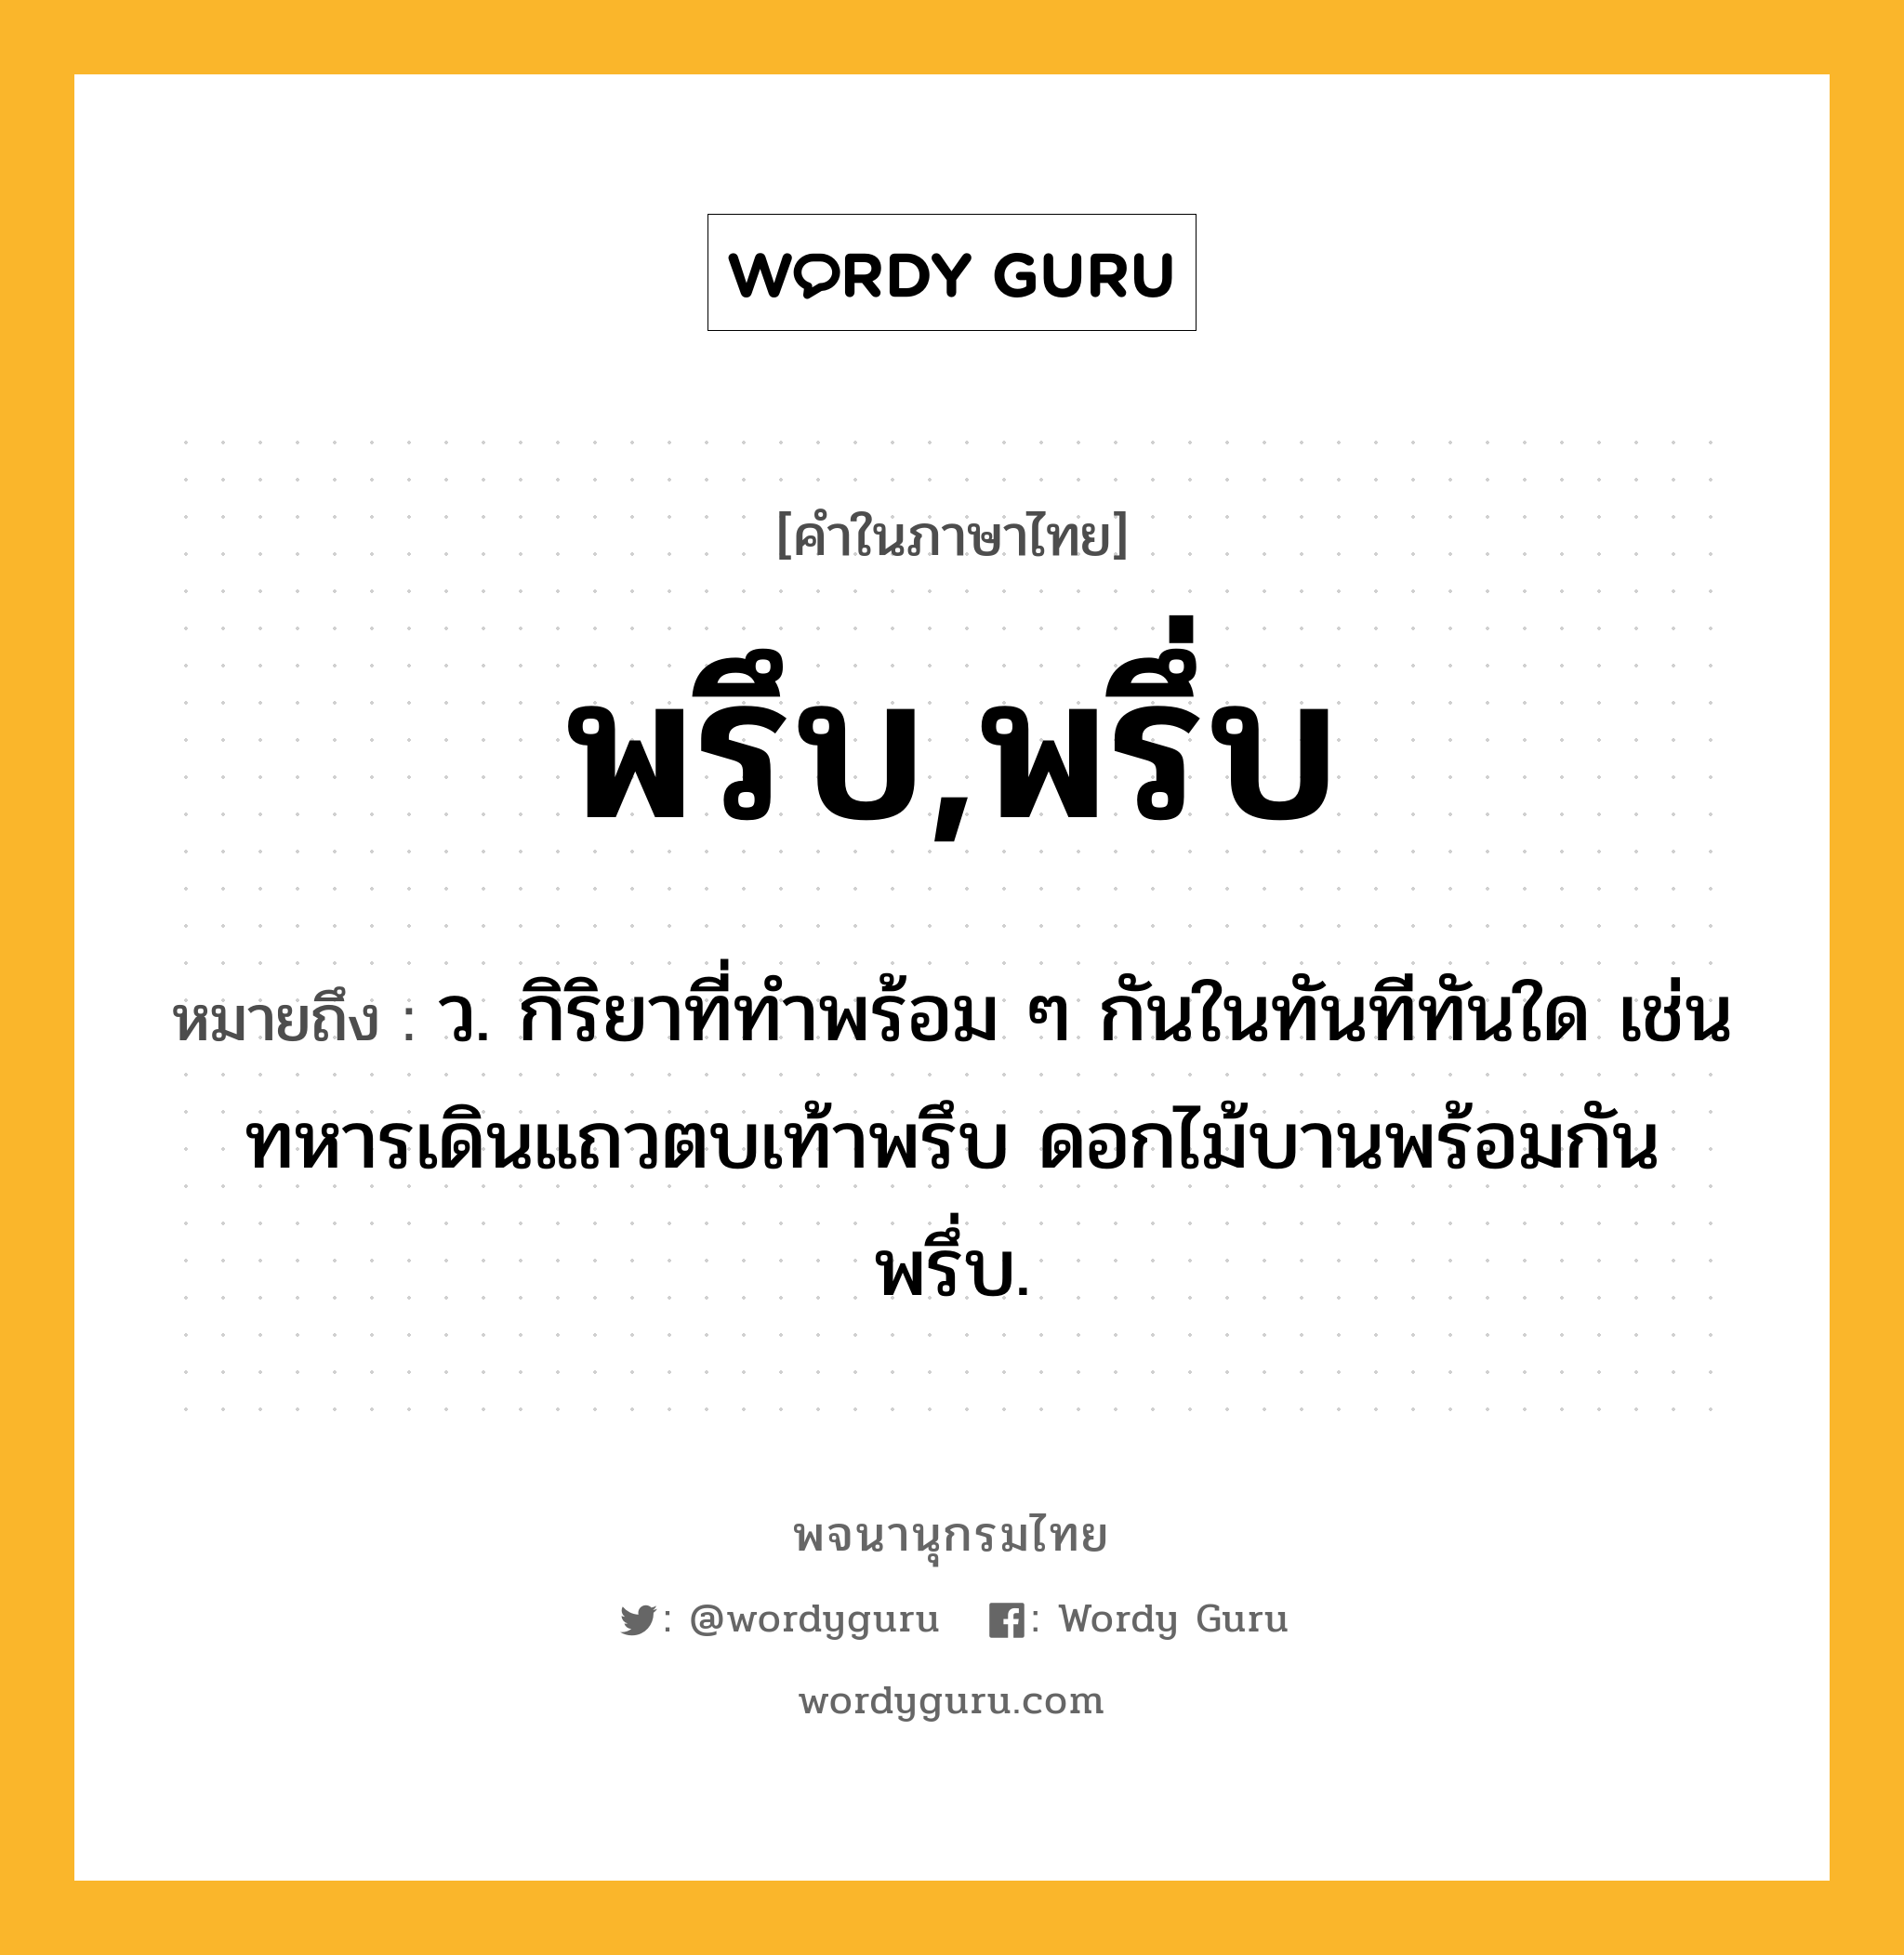 พรึบ,พรึ่บ หมายถึงอะไร?, คำในภาษาไทย พรึบ,พรึ่บ หมายถึง ว. กิริยาที่ทําพร้อม ๆ กันในทันทีทันใด เช่น ทหารเดินแถวตบเท้าพรึบ ดอกไม้บานพร้อมกันพรึ่บ.